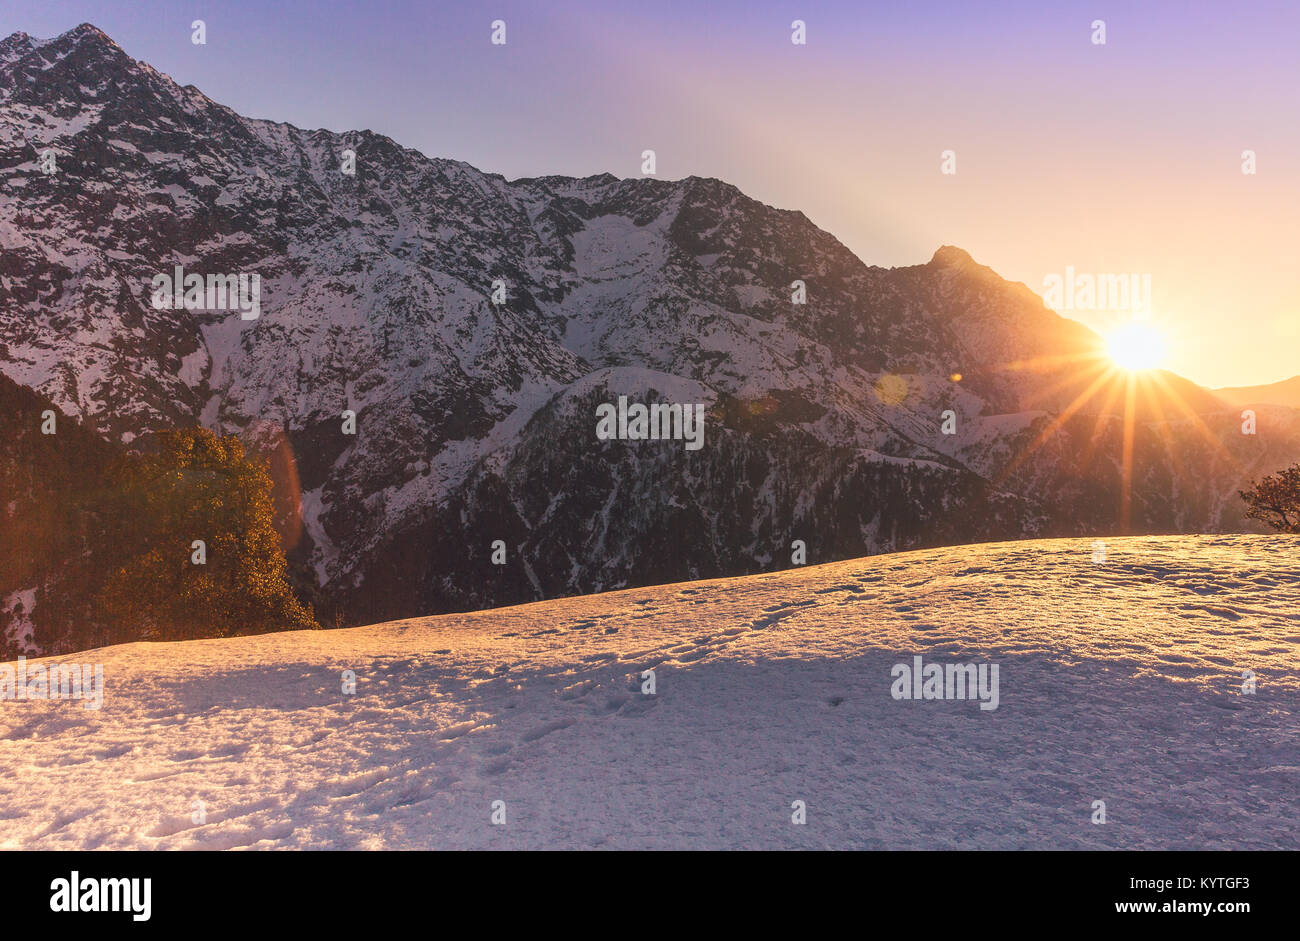 Soleil se lève sur les sommets enneigés à Triund, Mcleodganj, Dharamsala, Himachal Pradesh, Inde. Purple/nuances dorées de l'aube. Entouré par la neige Banque D'Images